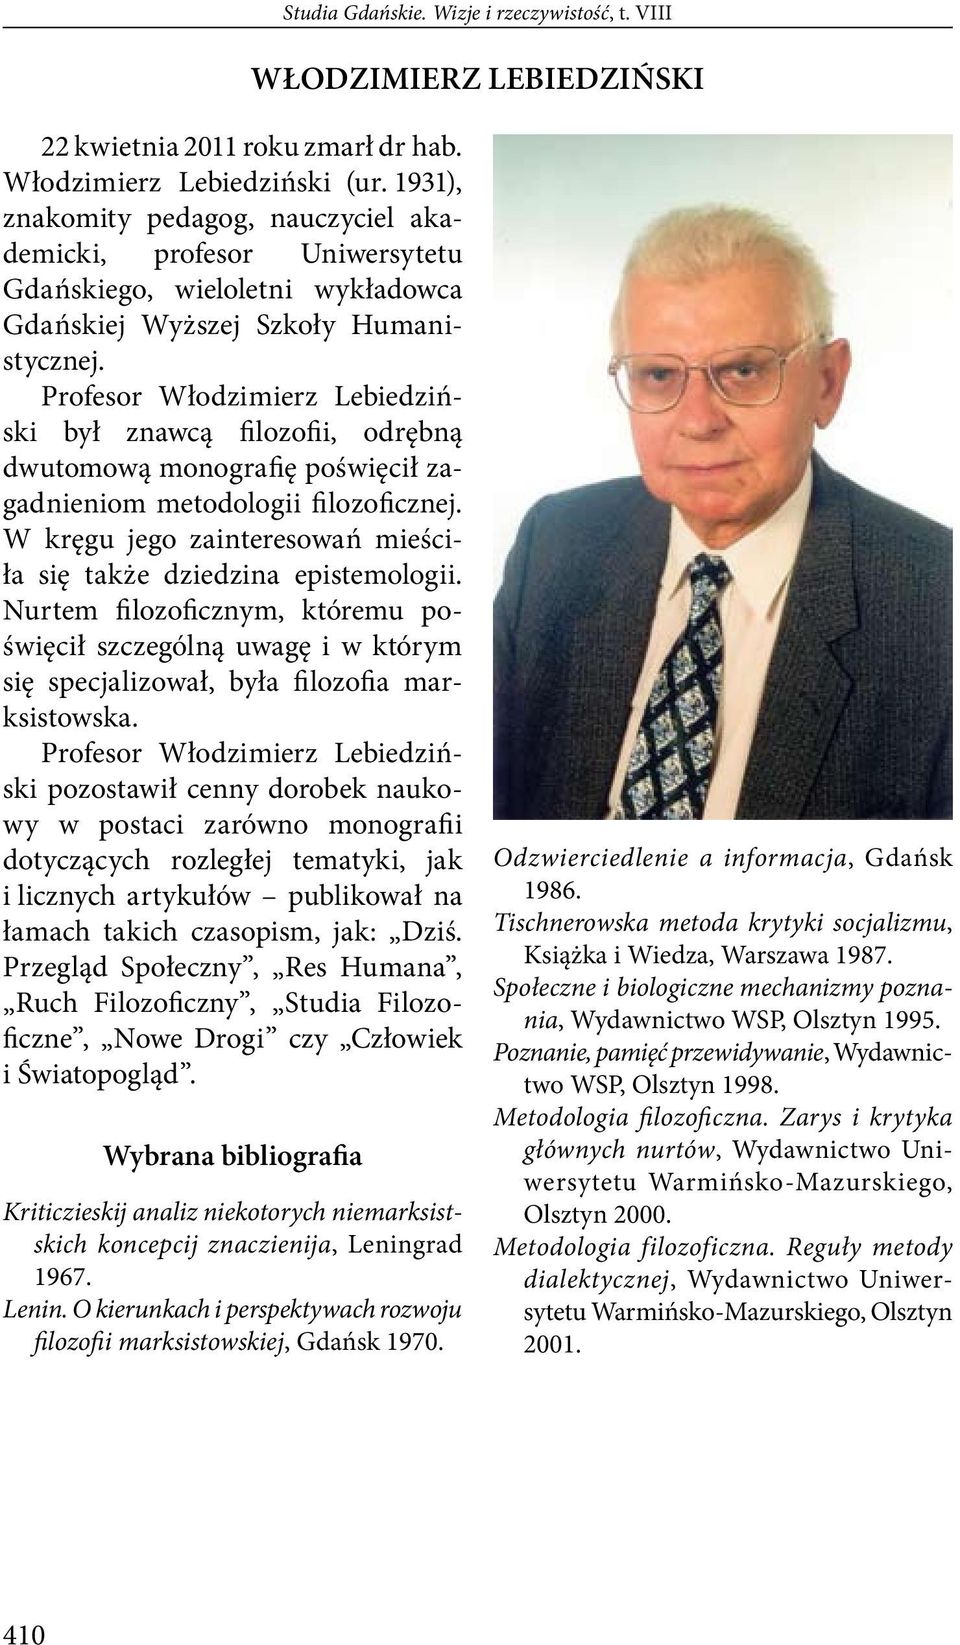 Profesor Włodzimierz Lebiedziński był znawcą filozofii, odrębną dwutomową monografię poświęcił zagadnieniom metodologii filozoficznej.